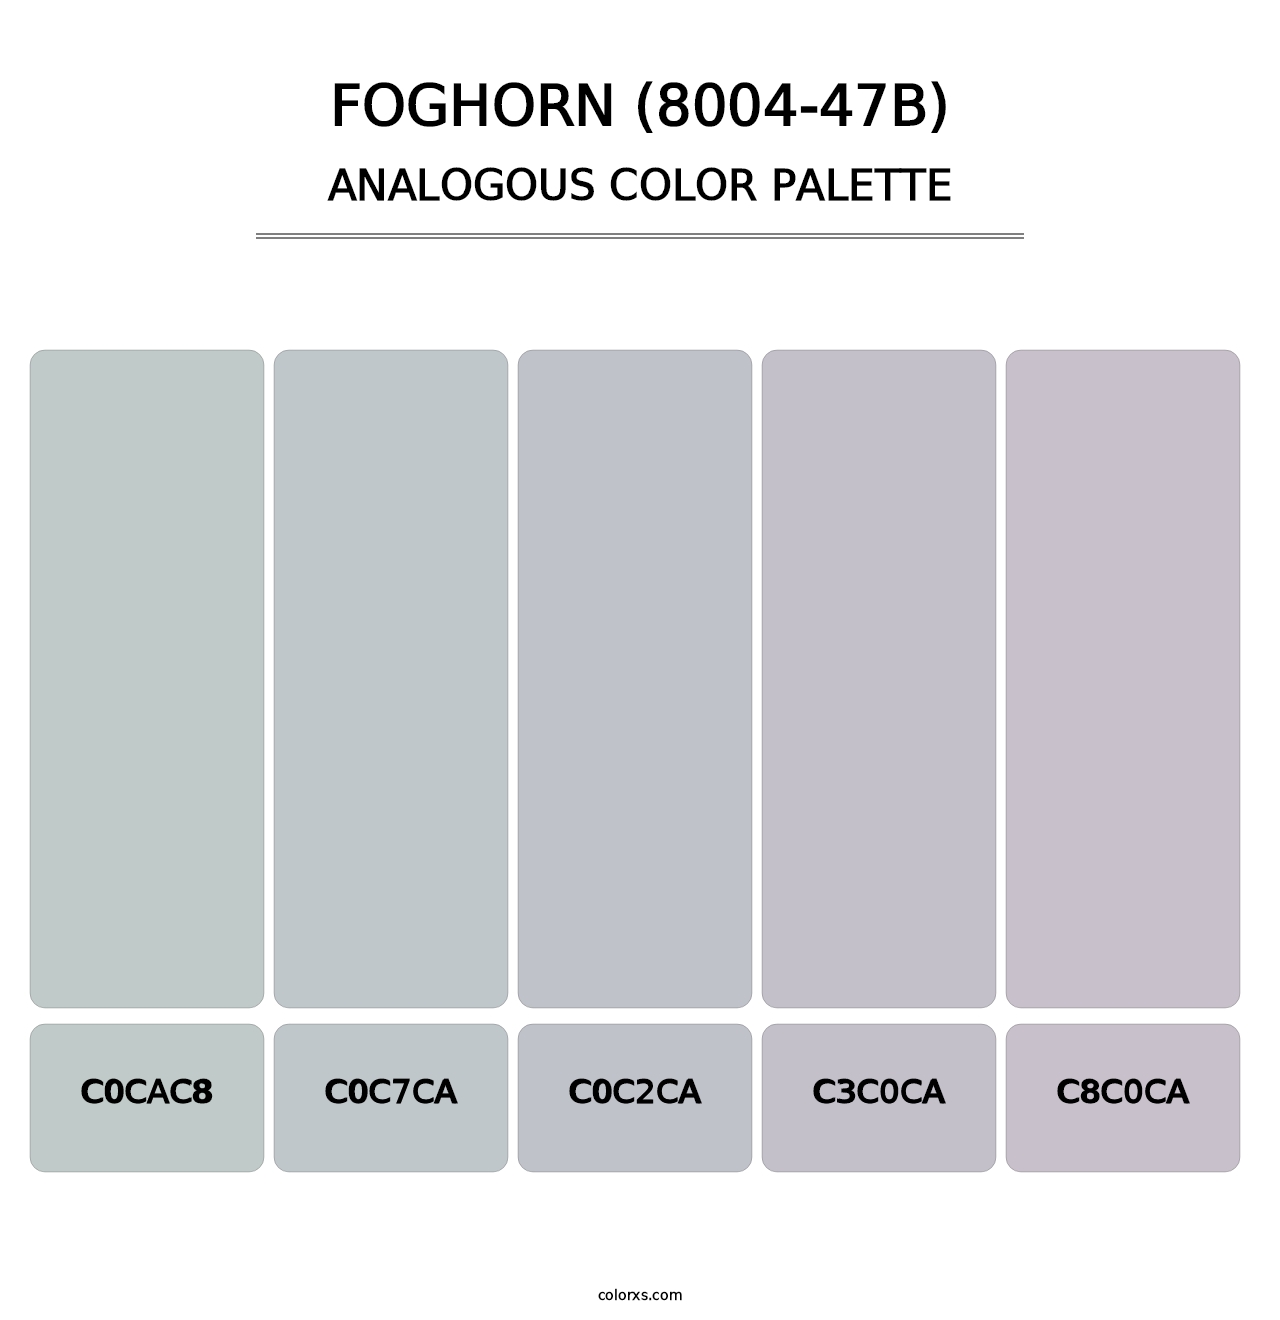 Foghorn (8004-47B) - Analogous Color Palette